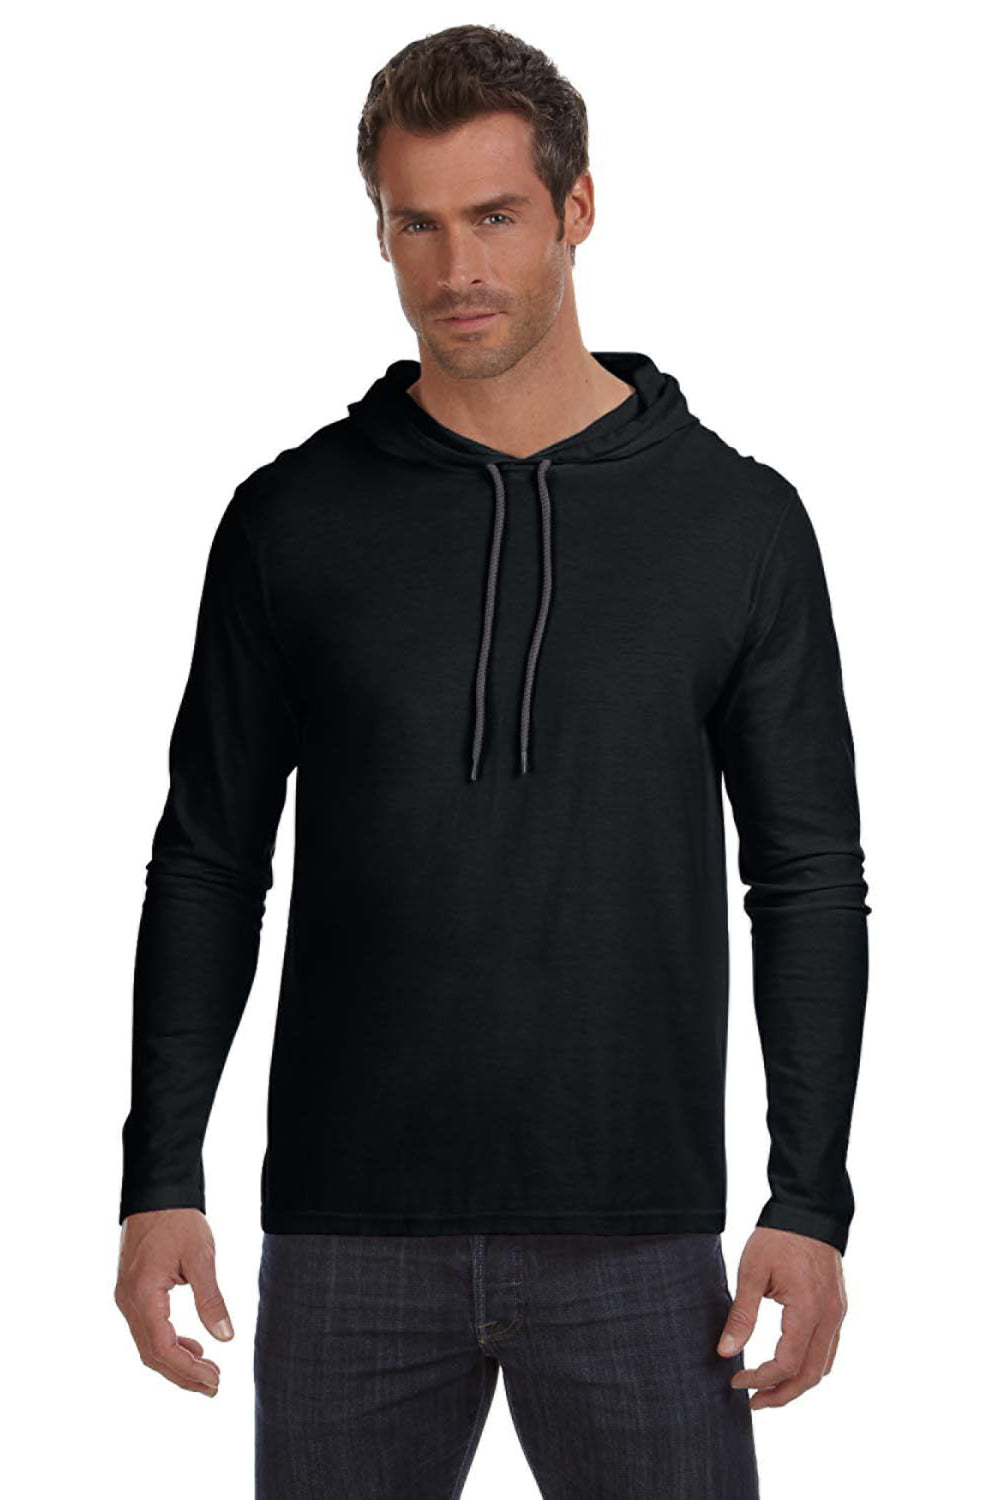 Anvil 987AN Mens Long Sleeve Hooded T-Shirt Hoodie Black/Dark Grey Front